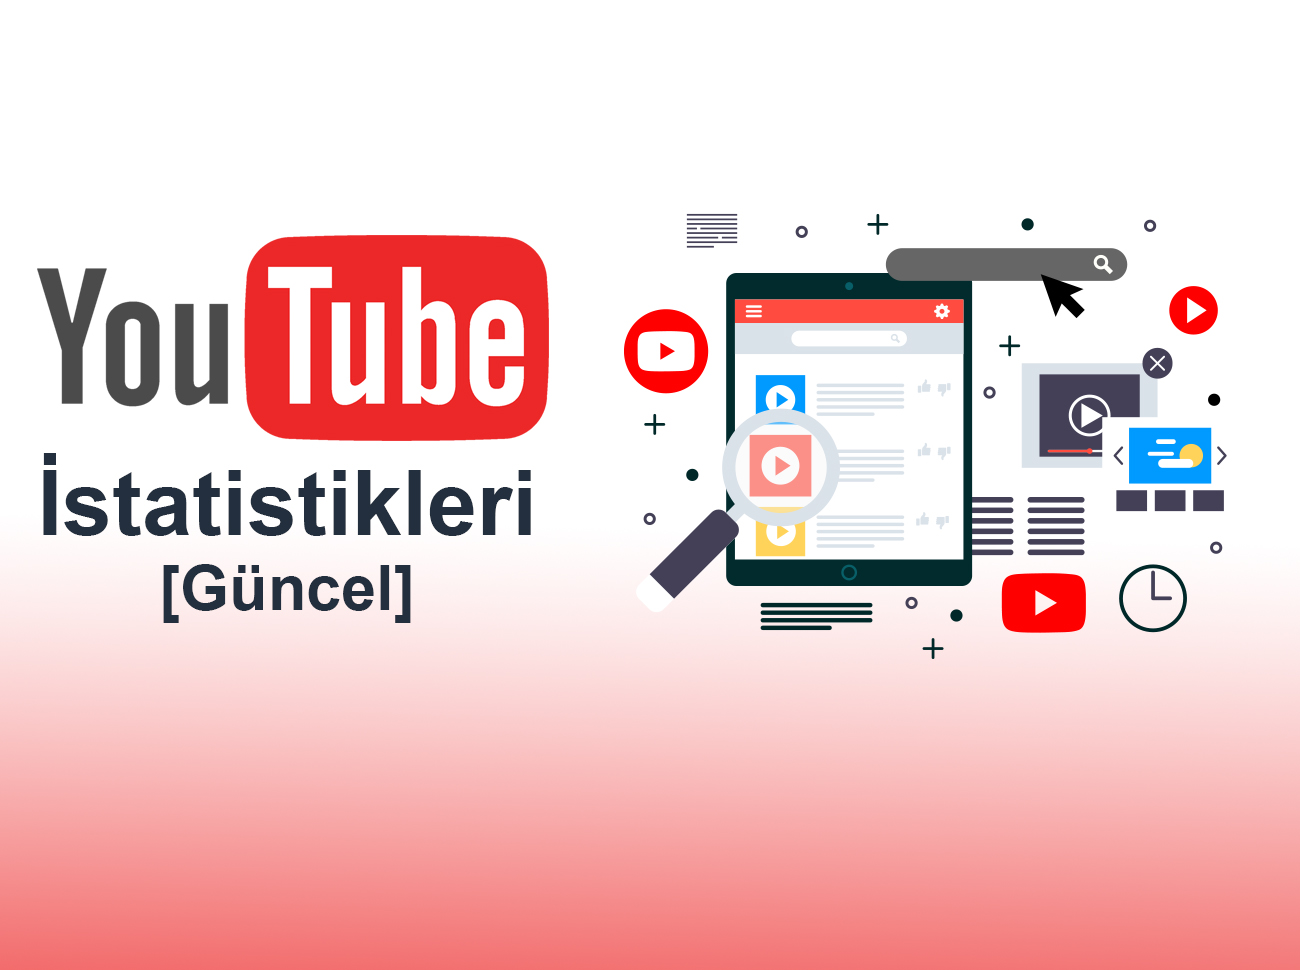 Youtube İstatistikleri (Güncel) - Branding Türkiye